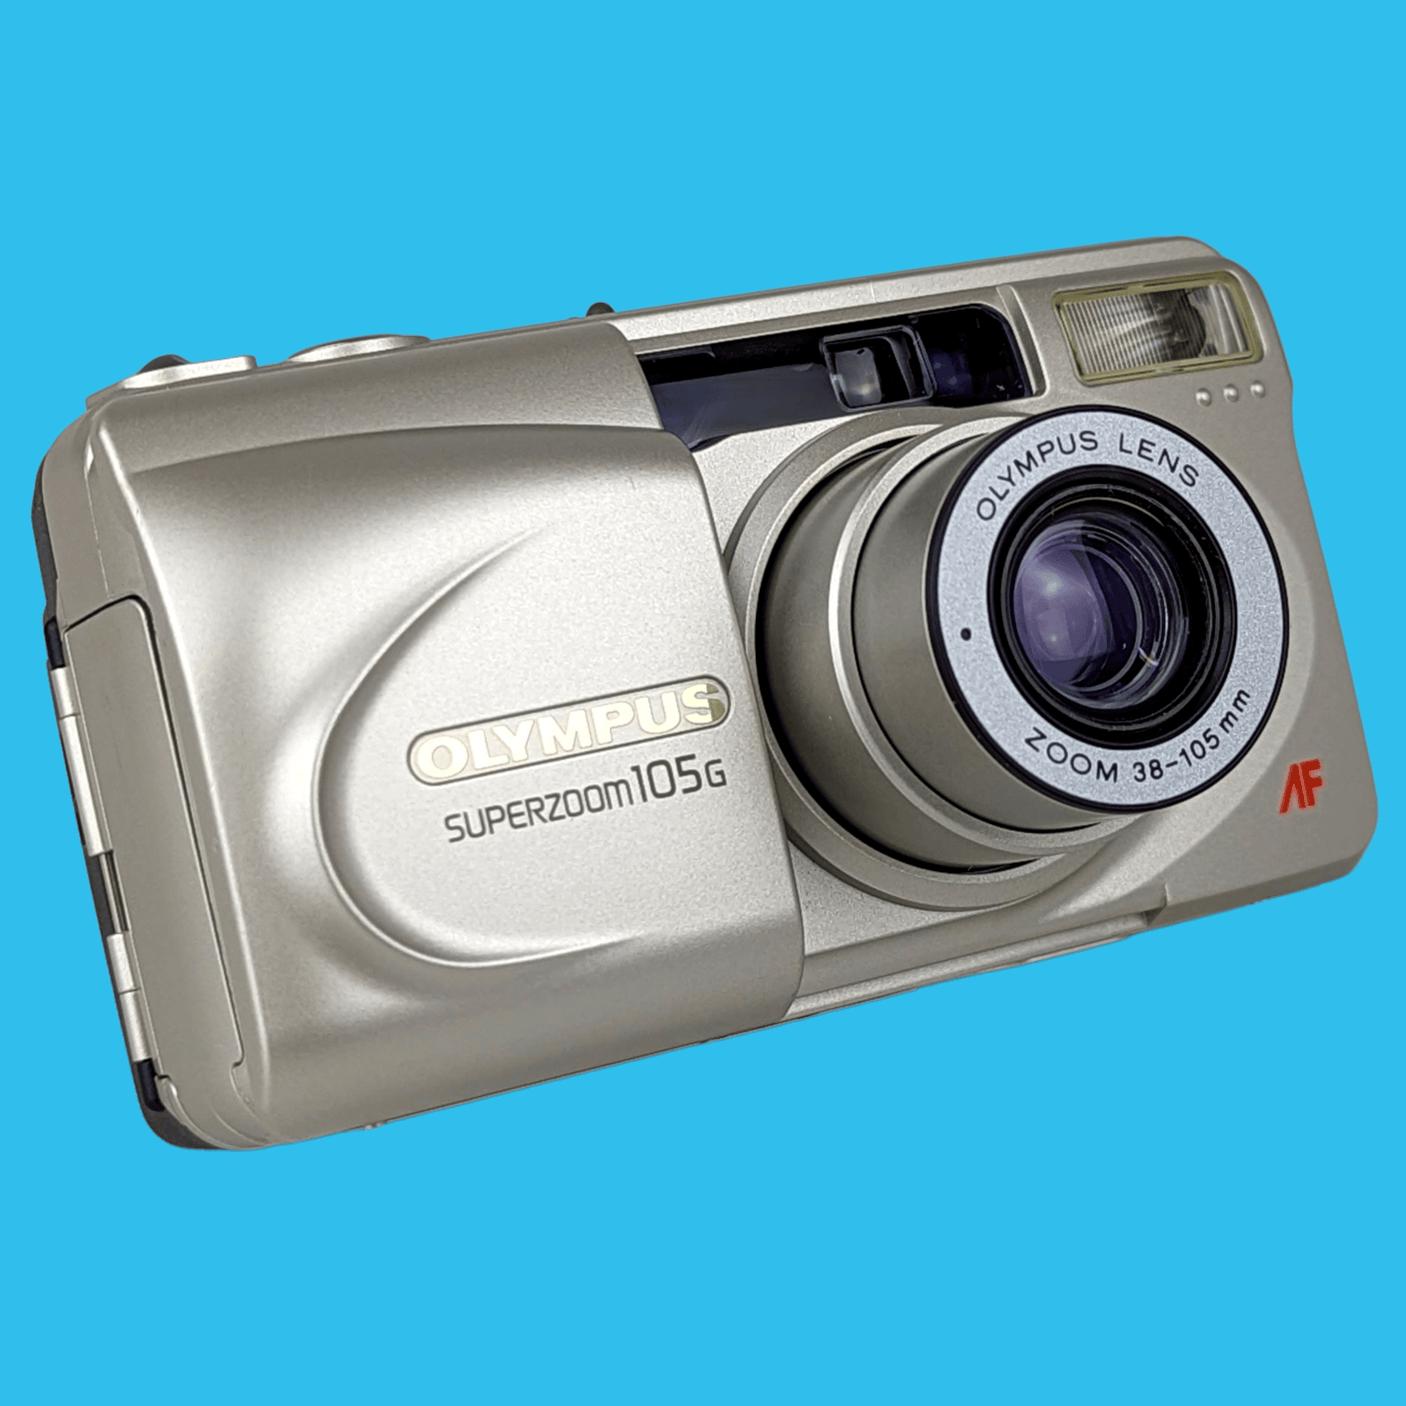 オリンパス スーパーズーム 105G 35mm フィルム カメラ ポイント アンド シュート